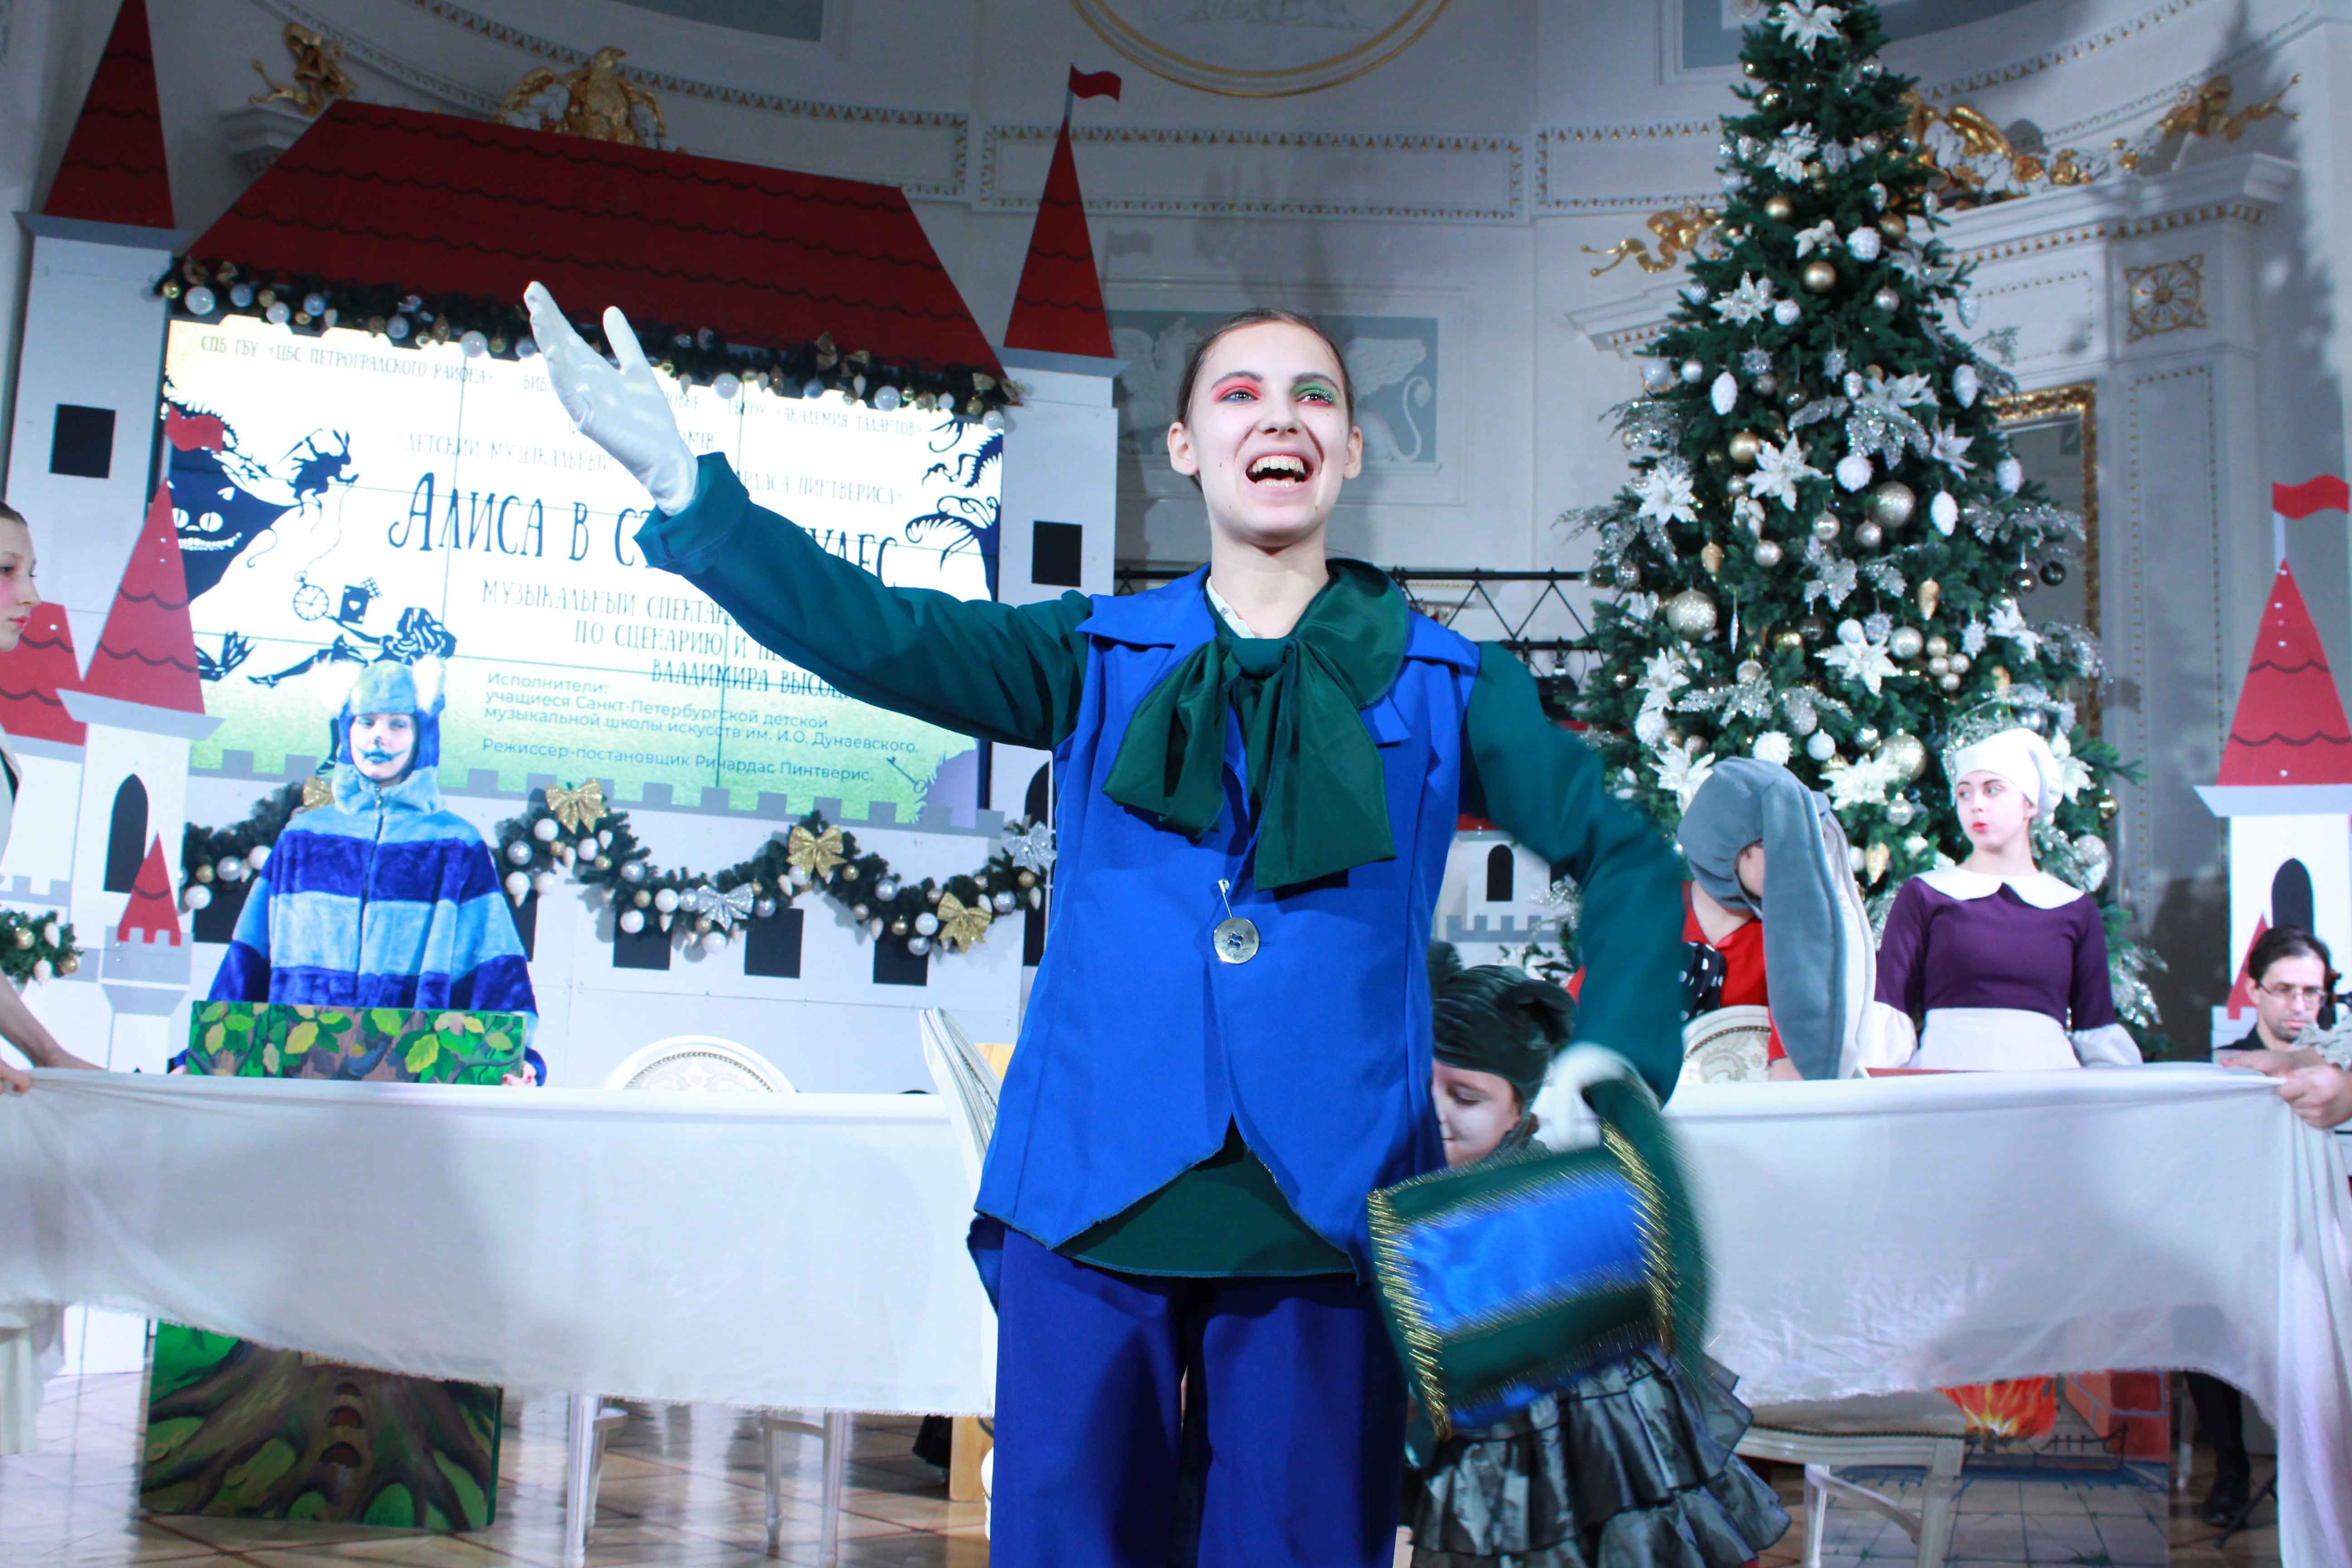 «Алиса в стране чудес» стала первым ярким событием «Рождественских музыкальных встреч» в рамках уже ставшего традиционным Фестиваля POMIR, задуманного его художественным руководителем Евгенией Наливкиной и Библиотекой на Карповке ​​​​​​​